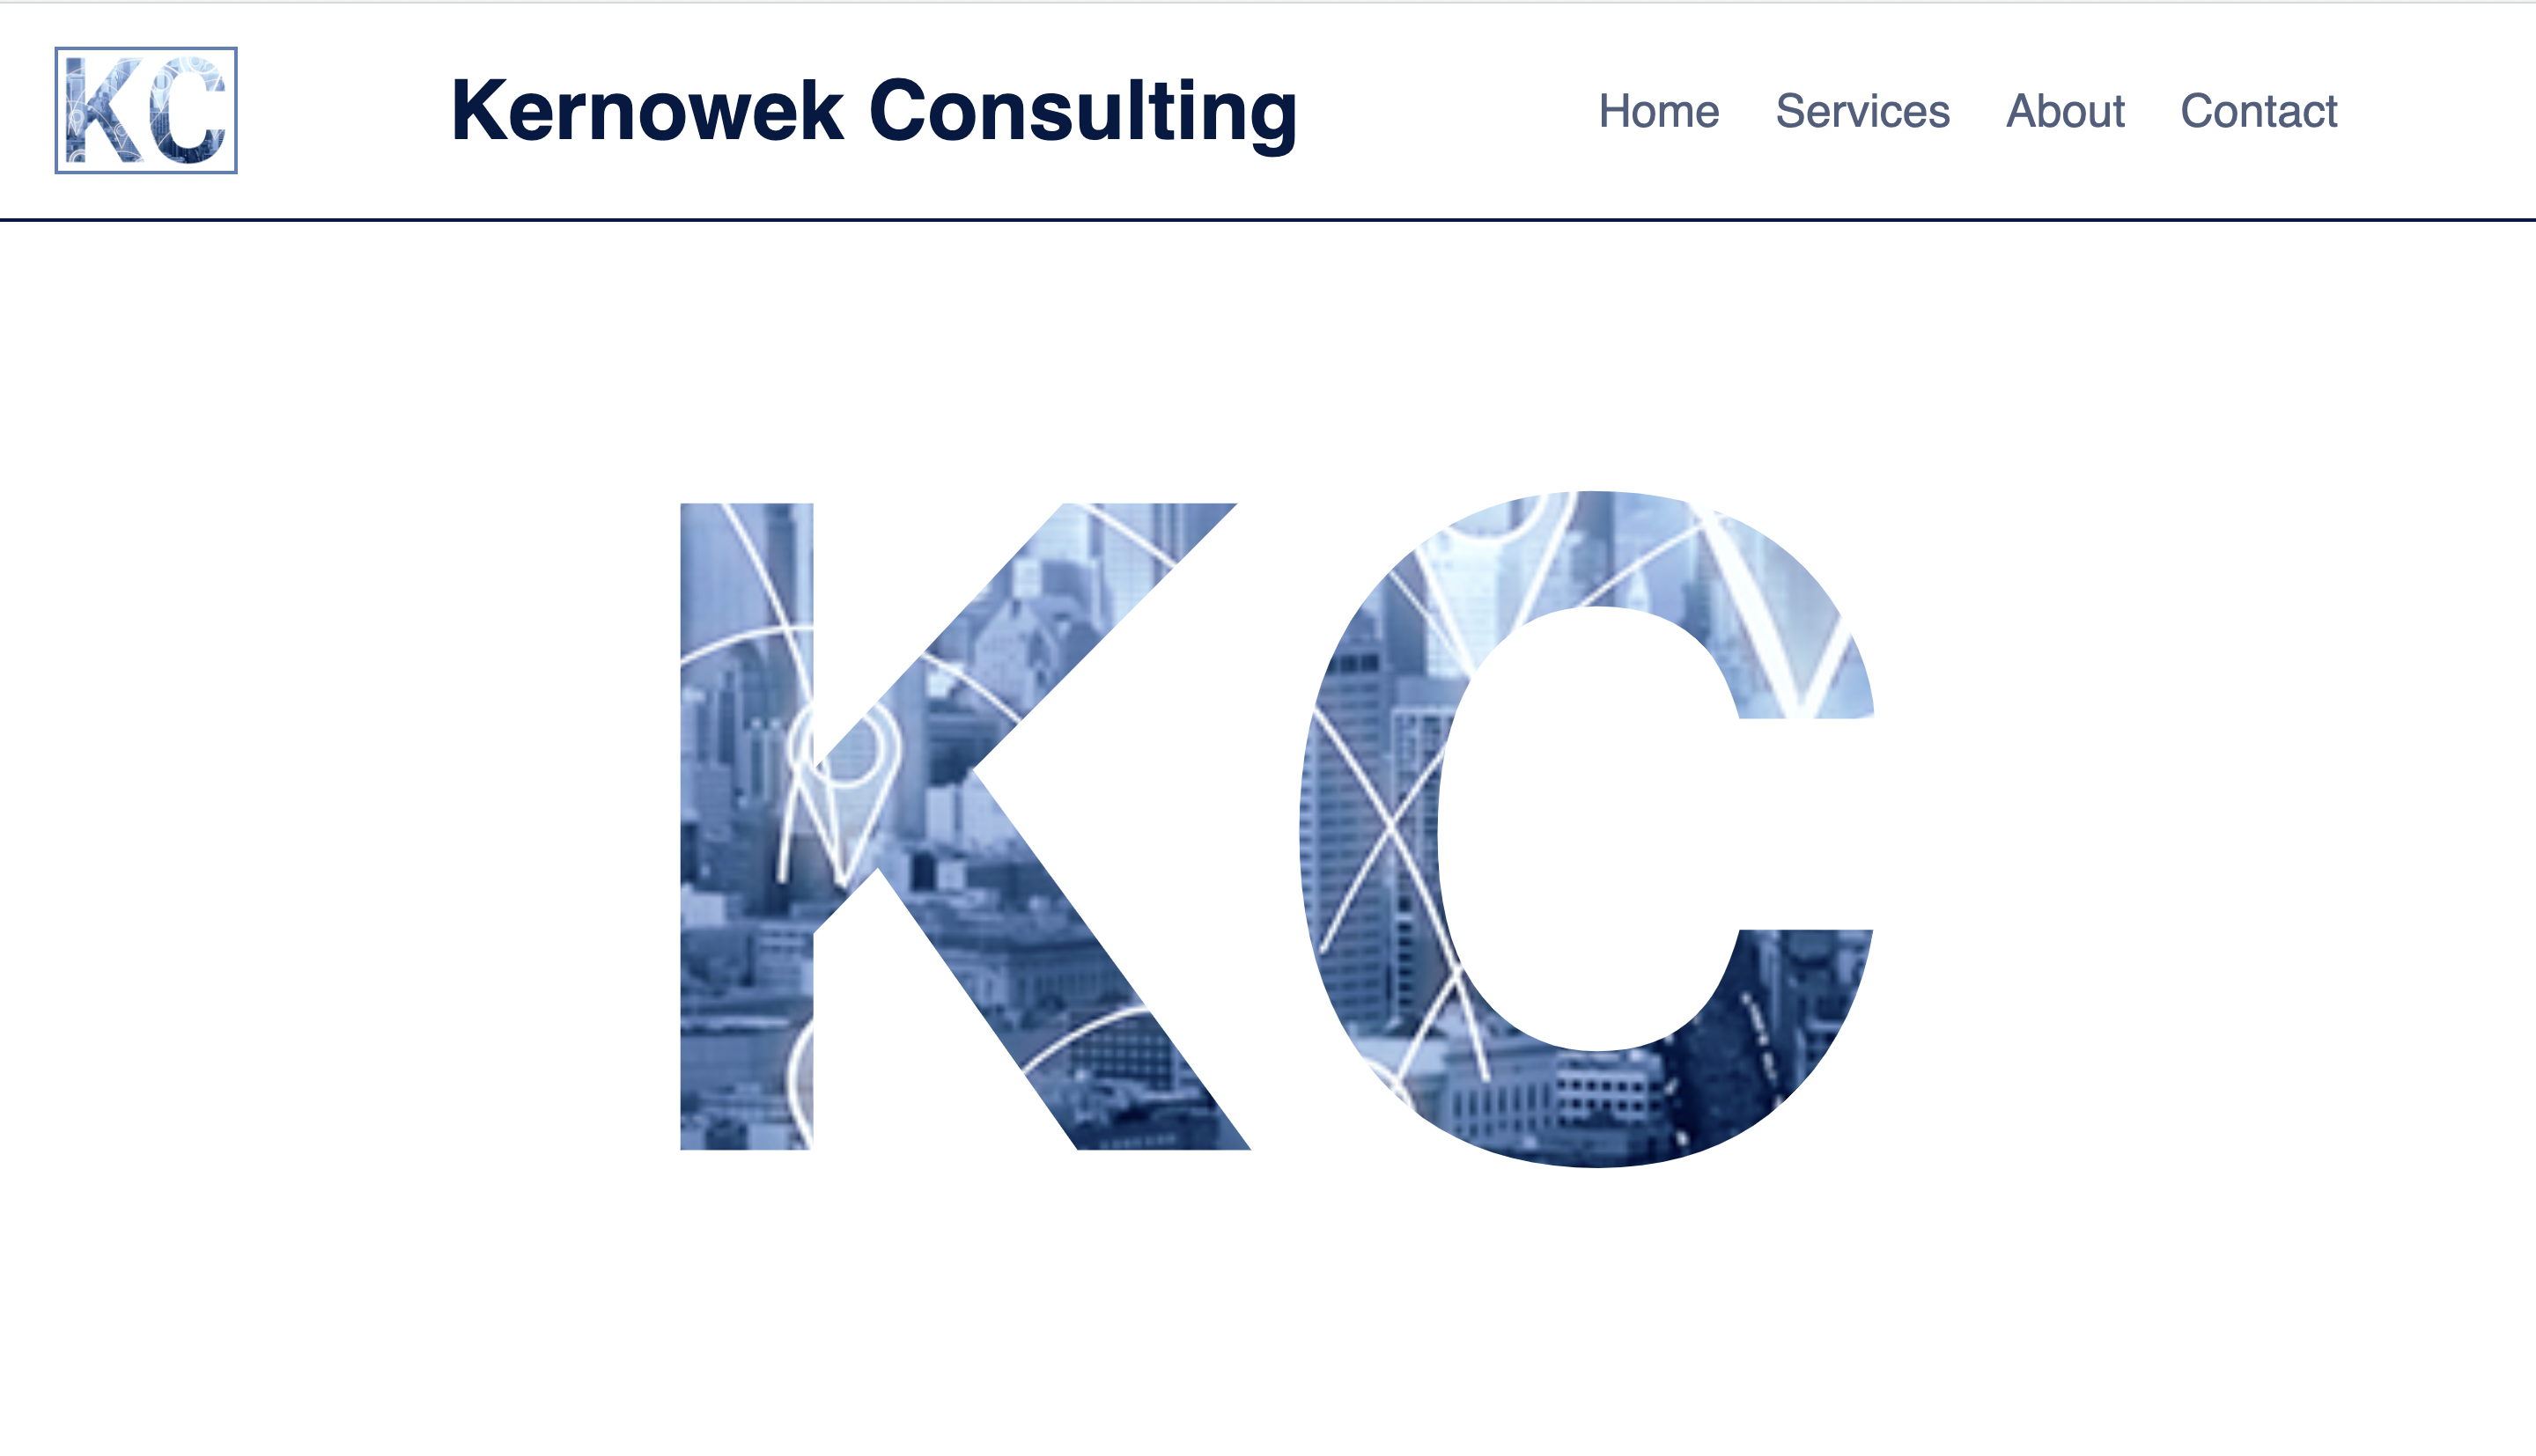 Kernowek Consulting Website